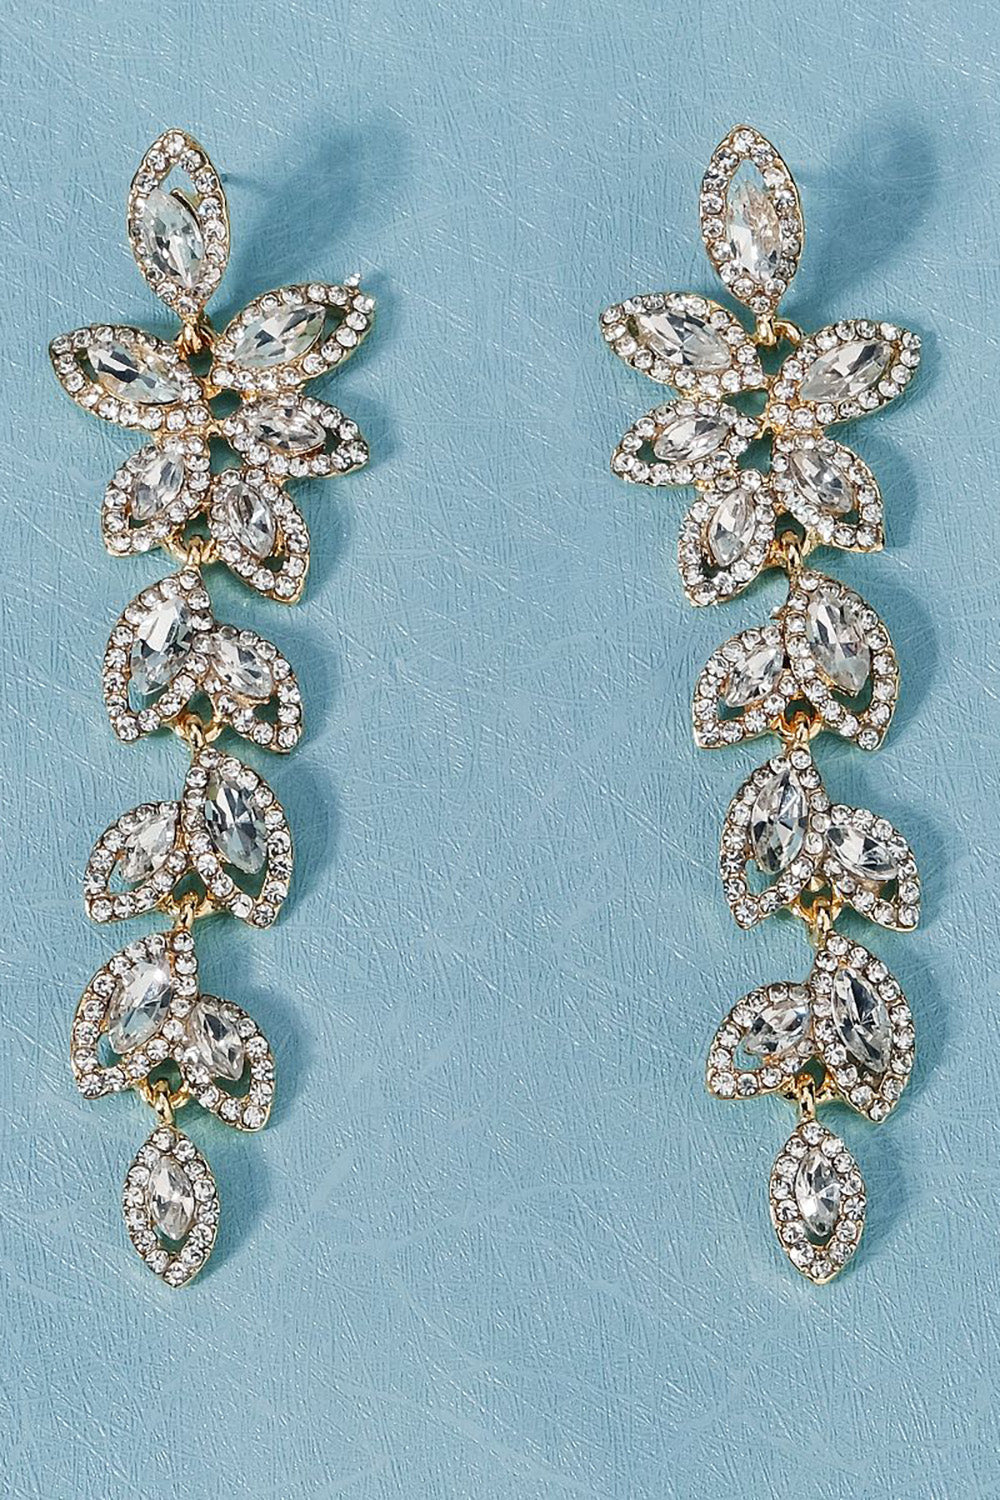 Vintage Simple Rhinestone Gold Leaf Earrings